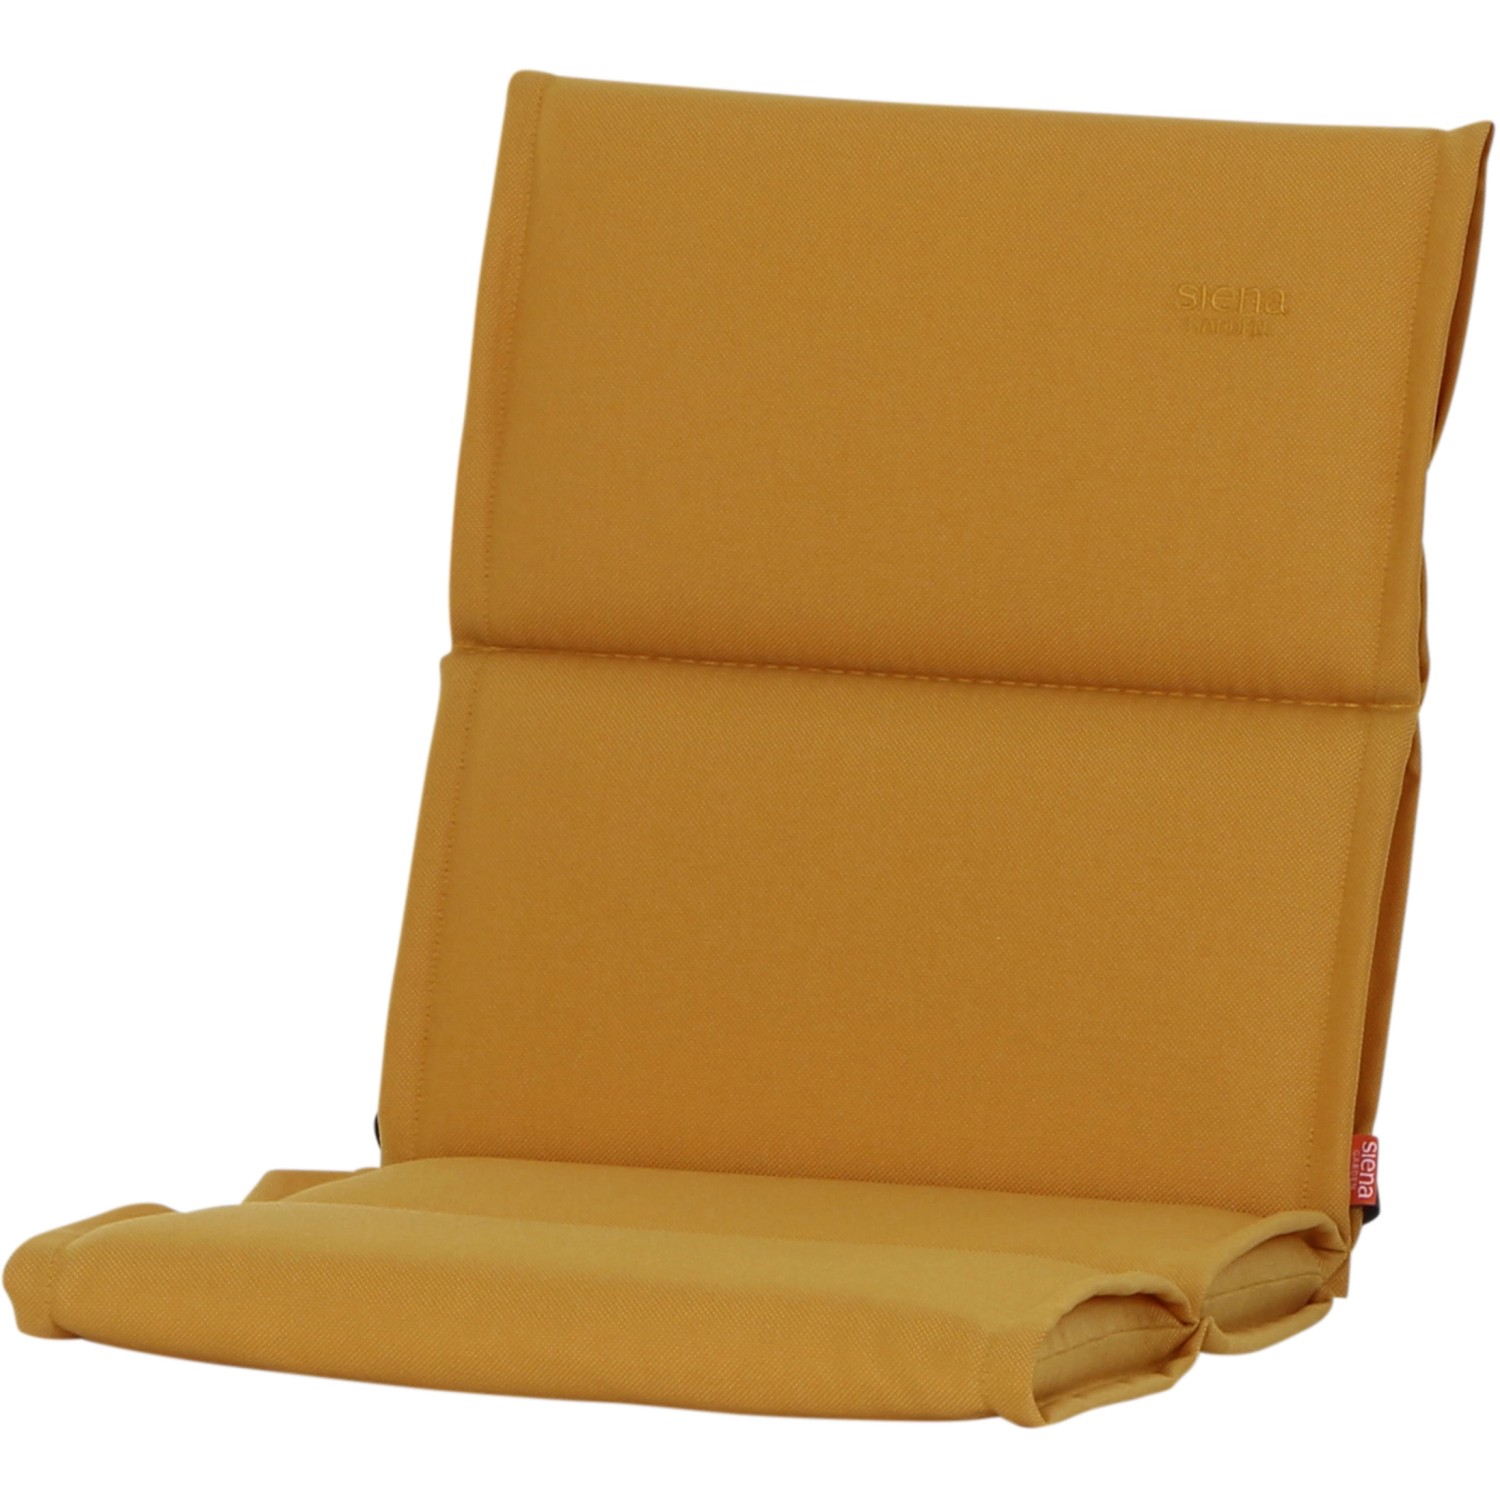 Siena Garden Sesselauflage Stella 96 cm x 46 cm x 3 cm Gelb kaufen bei OBI